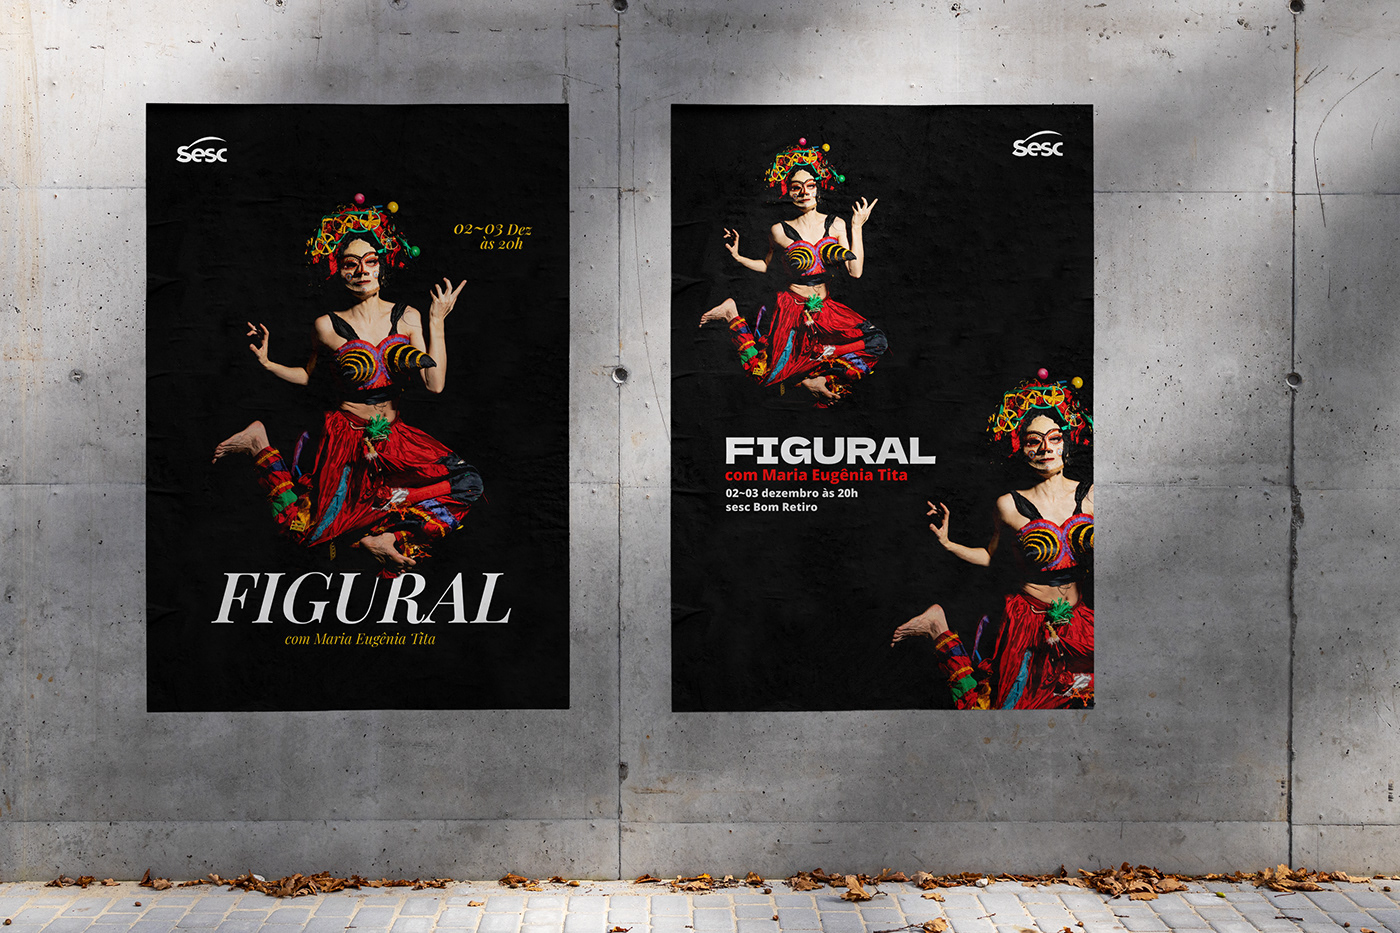 Série de posters desenvolvidos para divulgação do espetáculo Figural de Maria Eugênia Tita